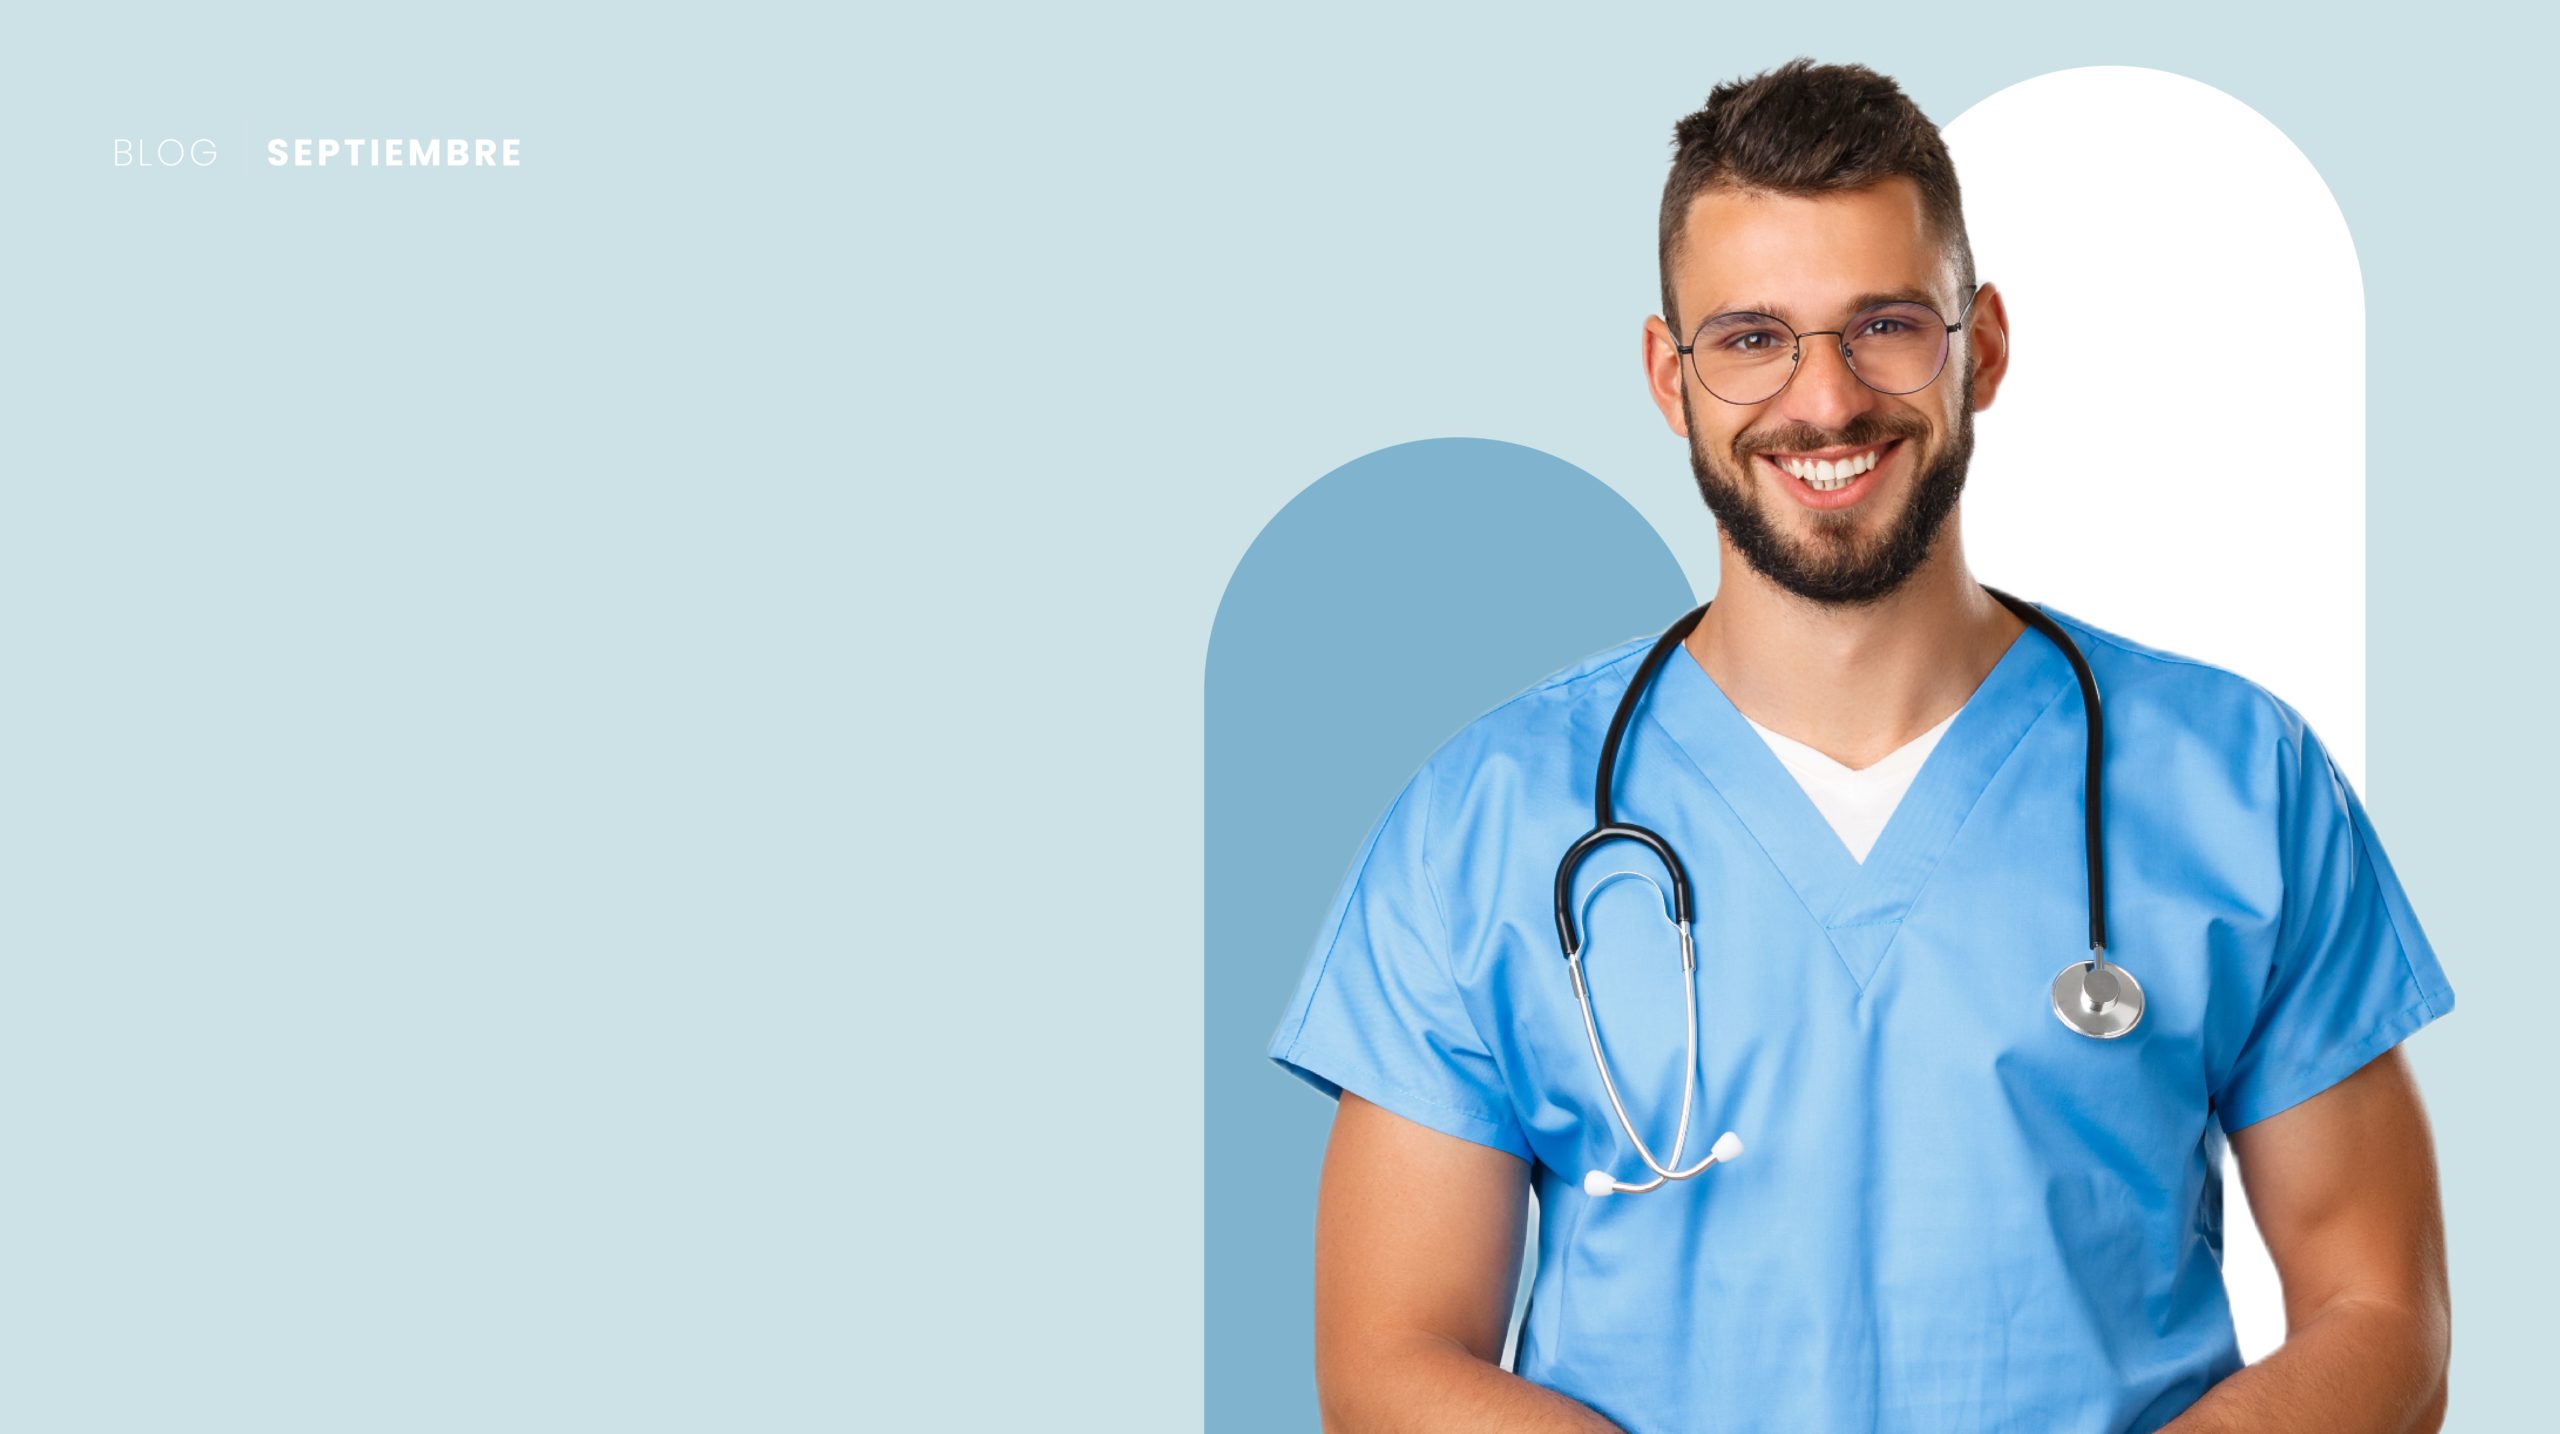 Estrategia CX para el sector salud: Médico con su uniforme